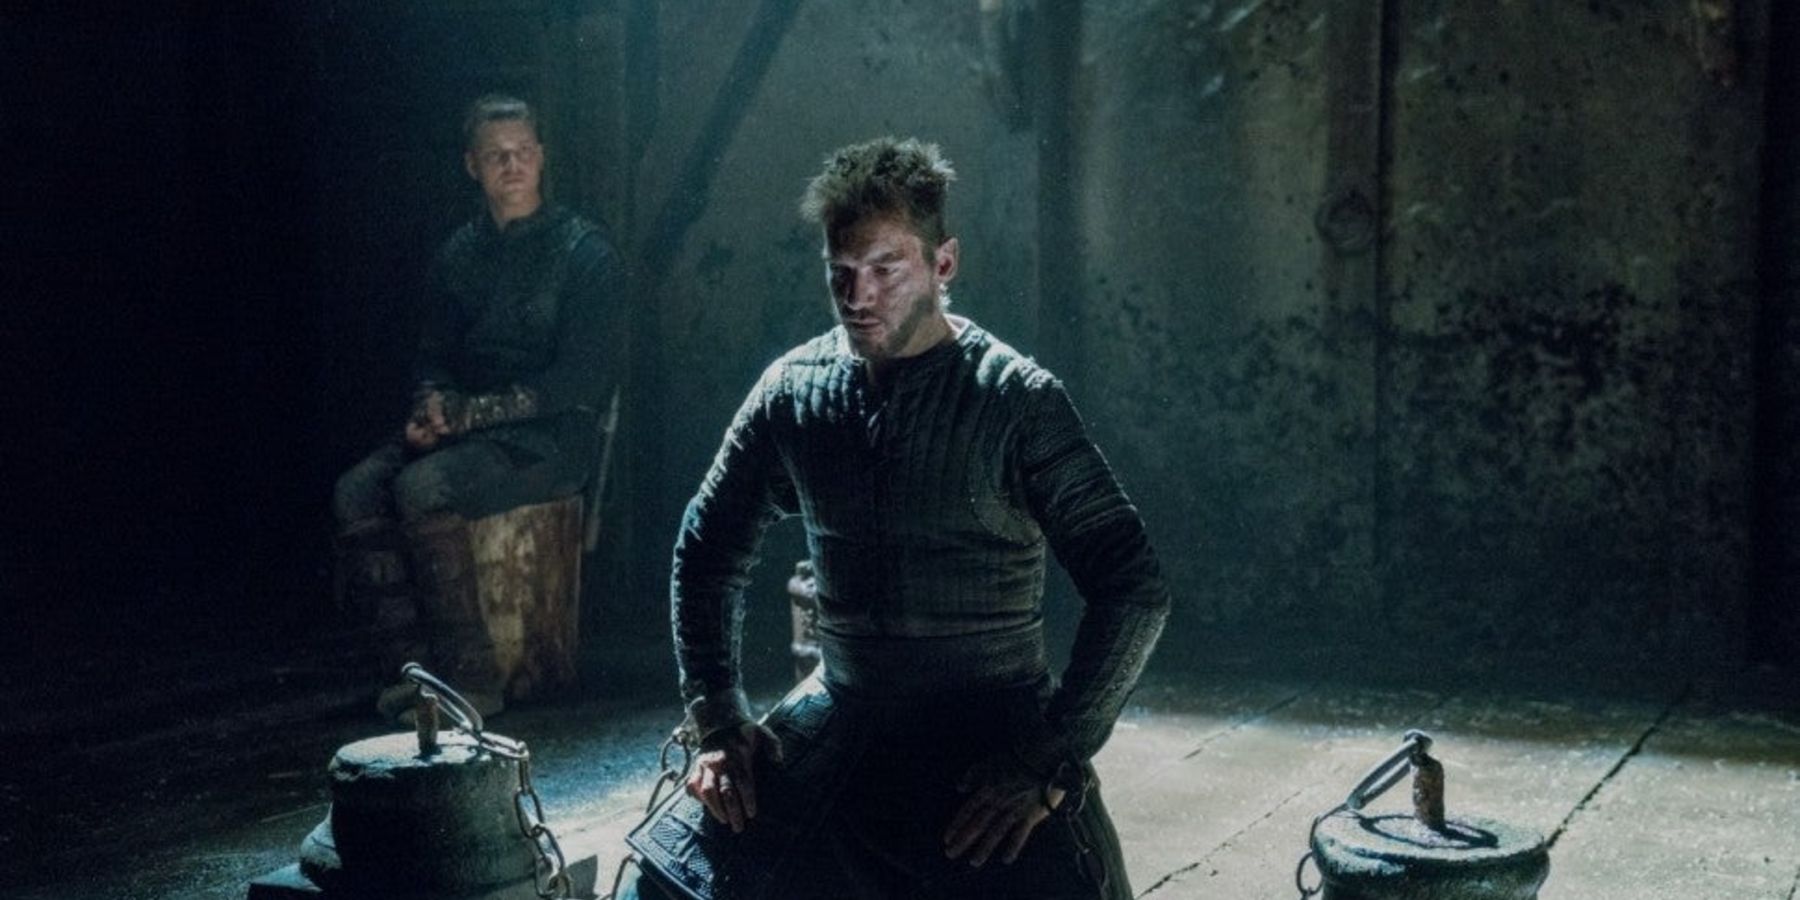 Heahmund gets interrogated by Ivar and Hvitserk in Vikings